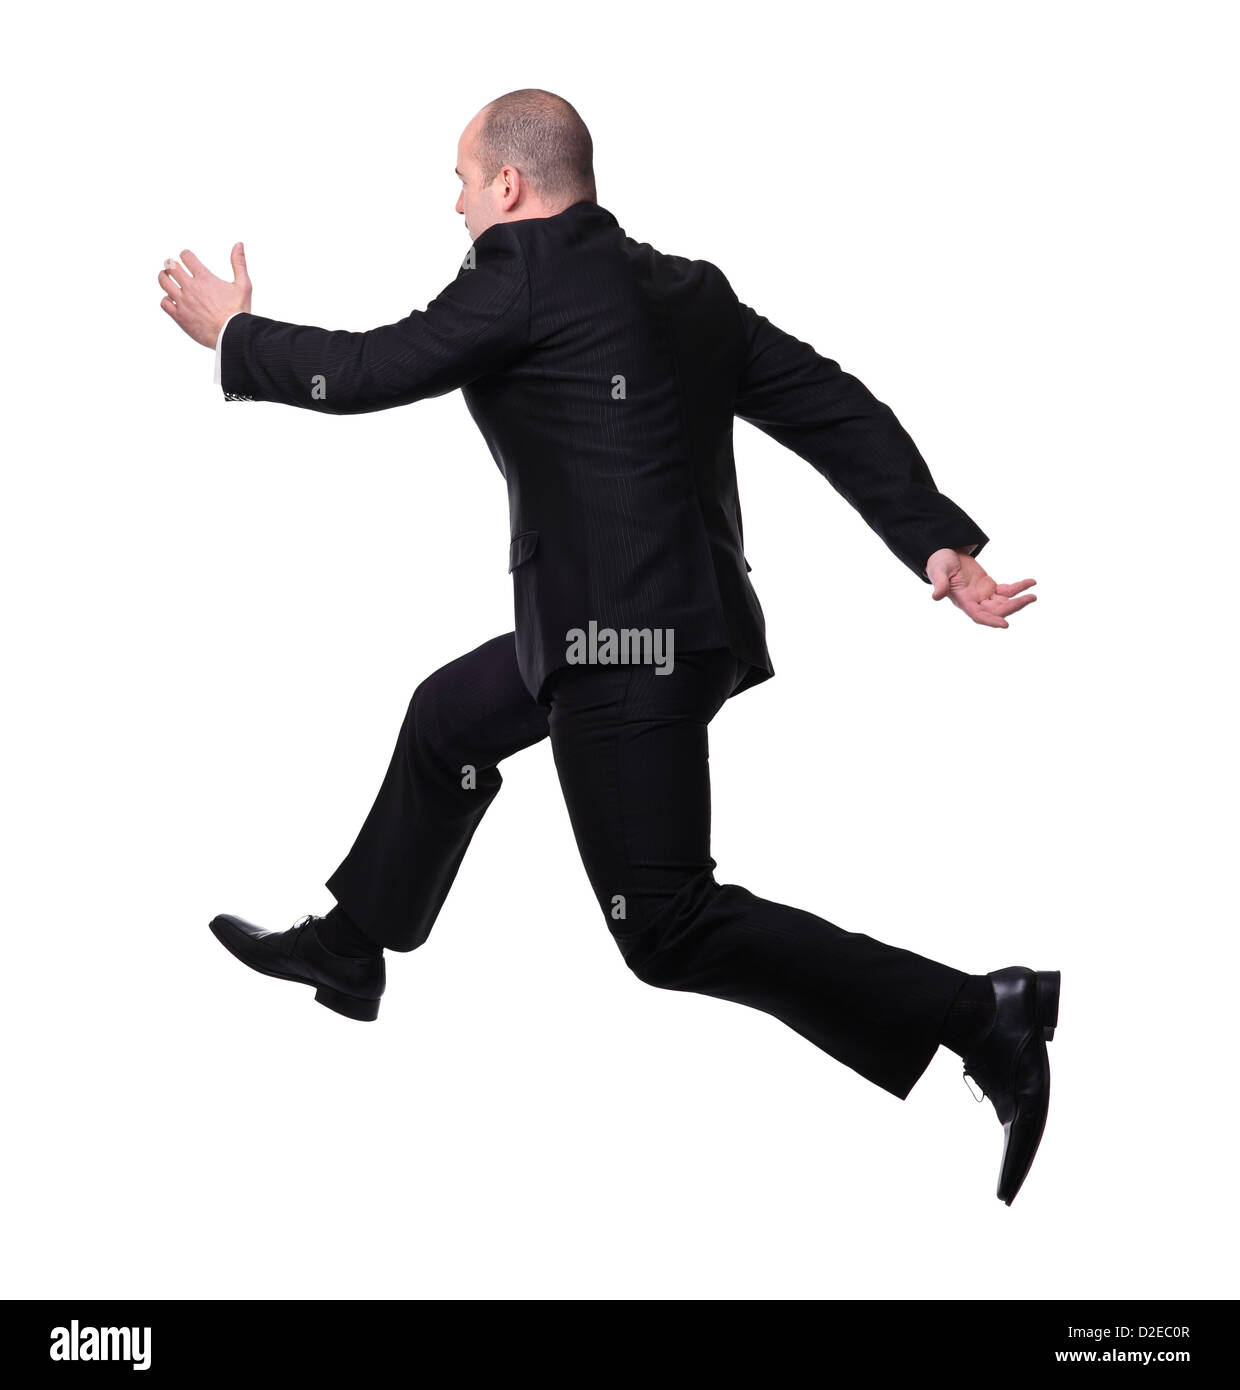 isolierte Geschäftsmann im laufenden pose Stockfoto